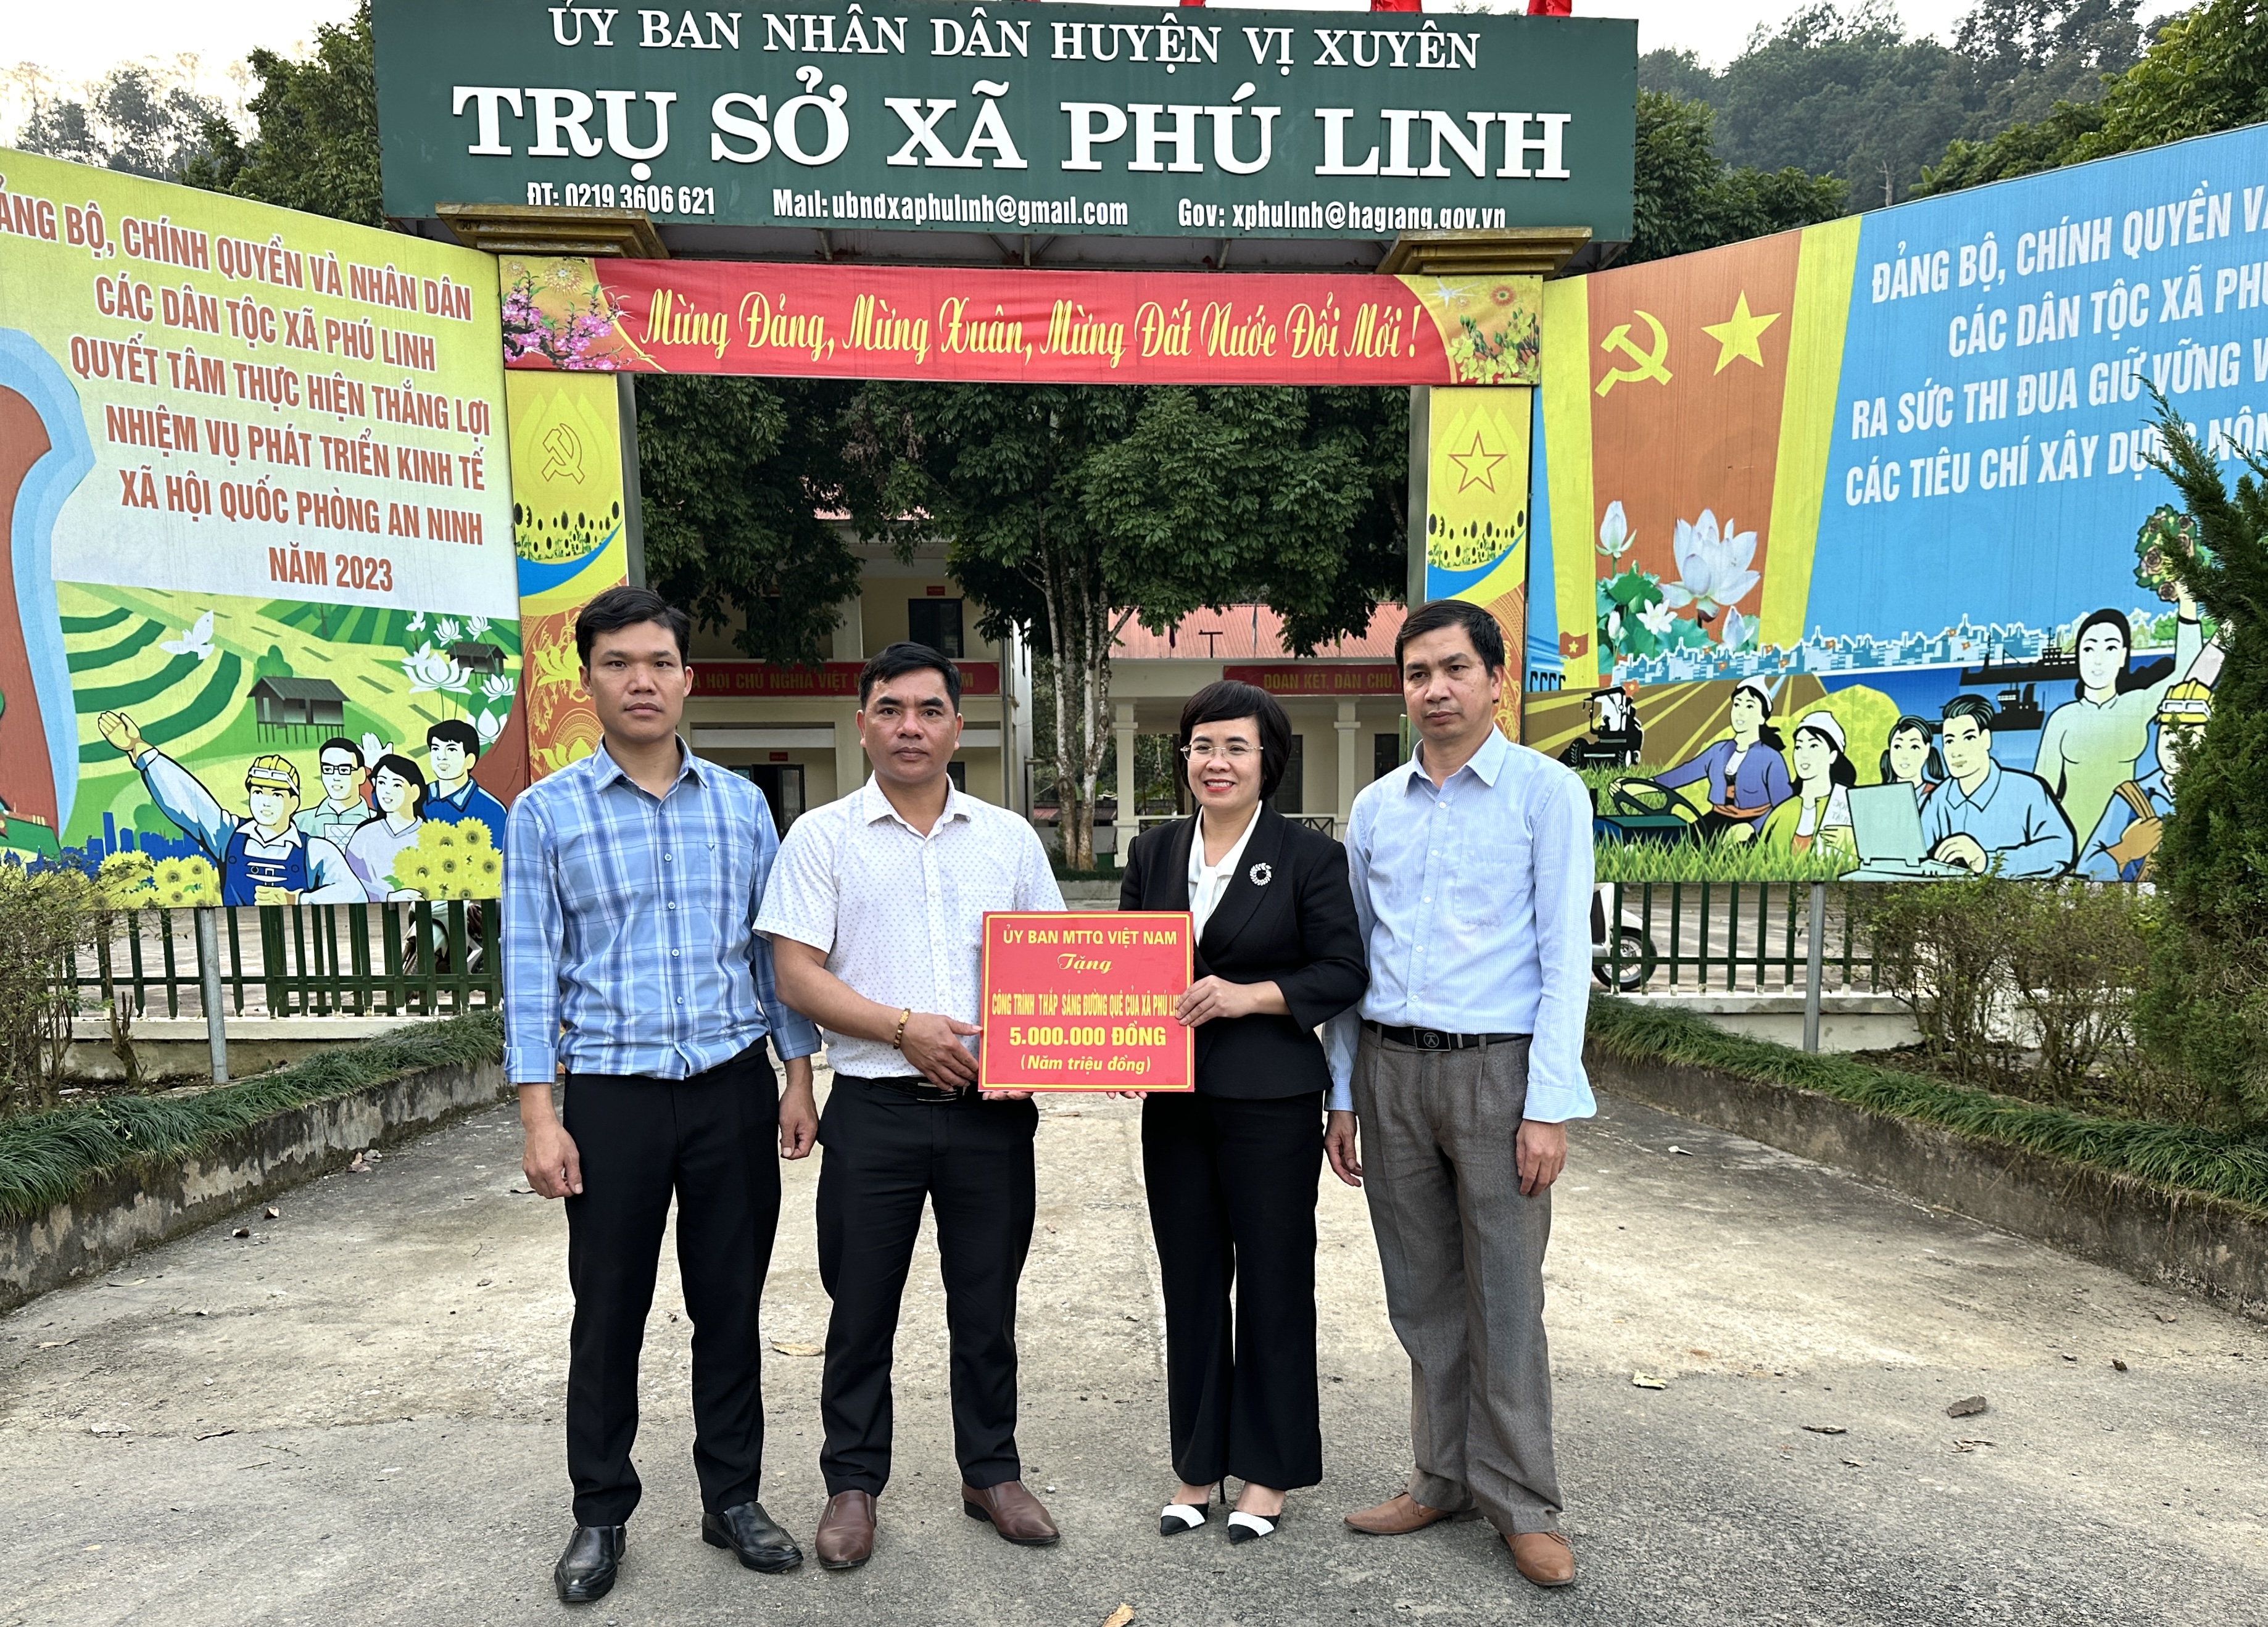 Ủy ban MTTQ Việt Nam huyện Vị Xuyên trao tiền hỗ trợ xã Phú Linh thắp sáng đường quê